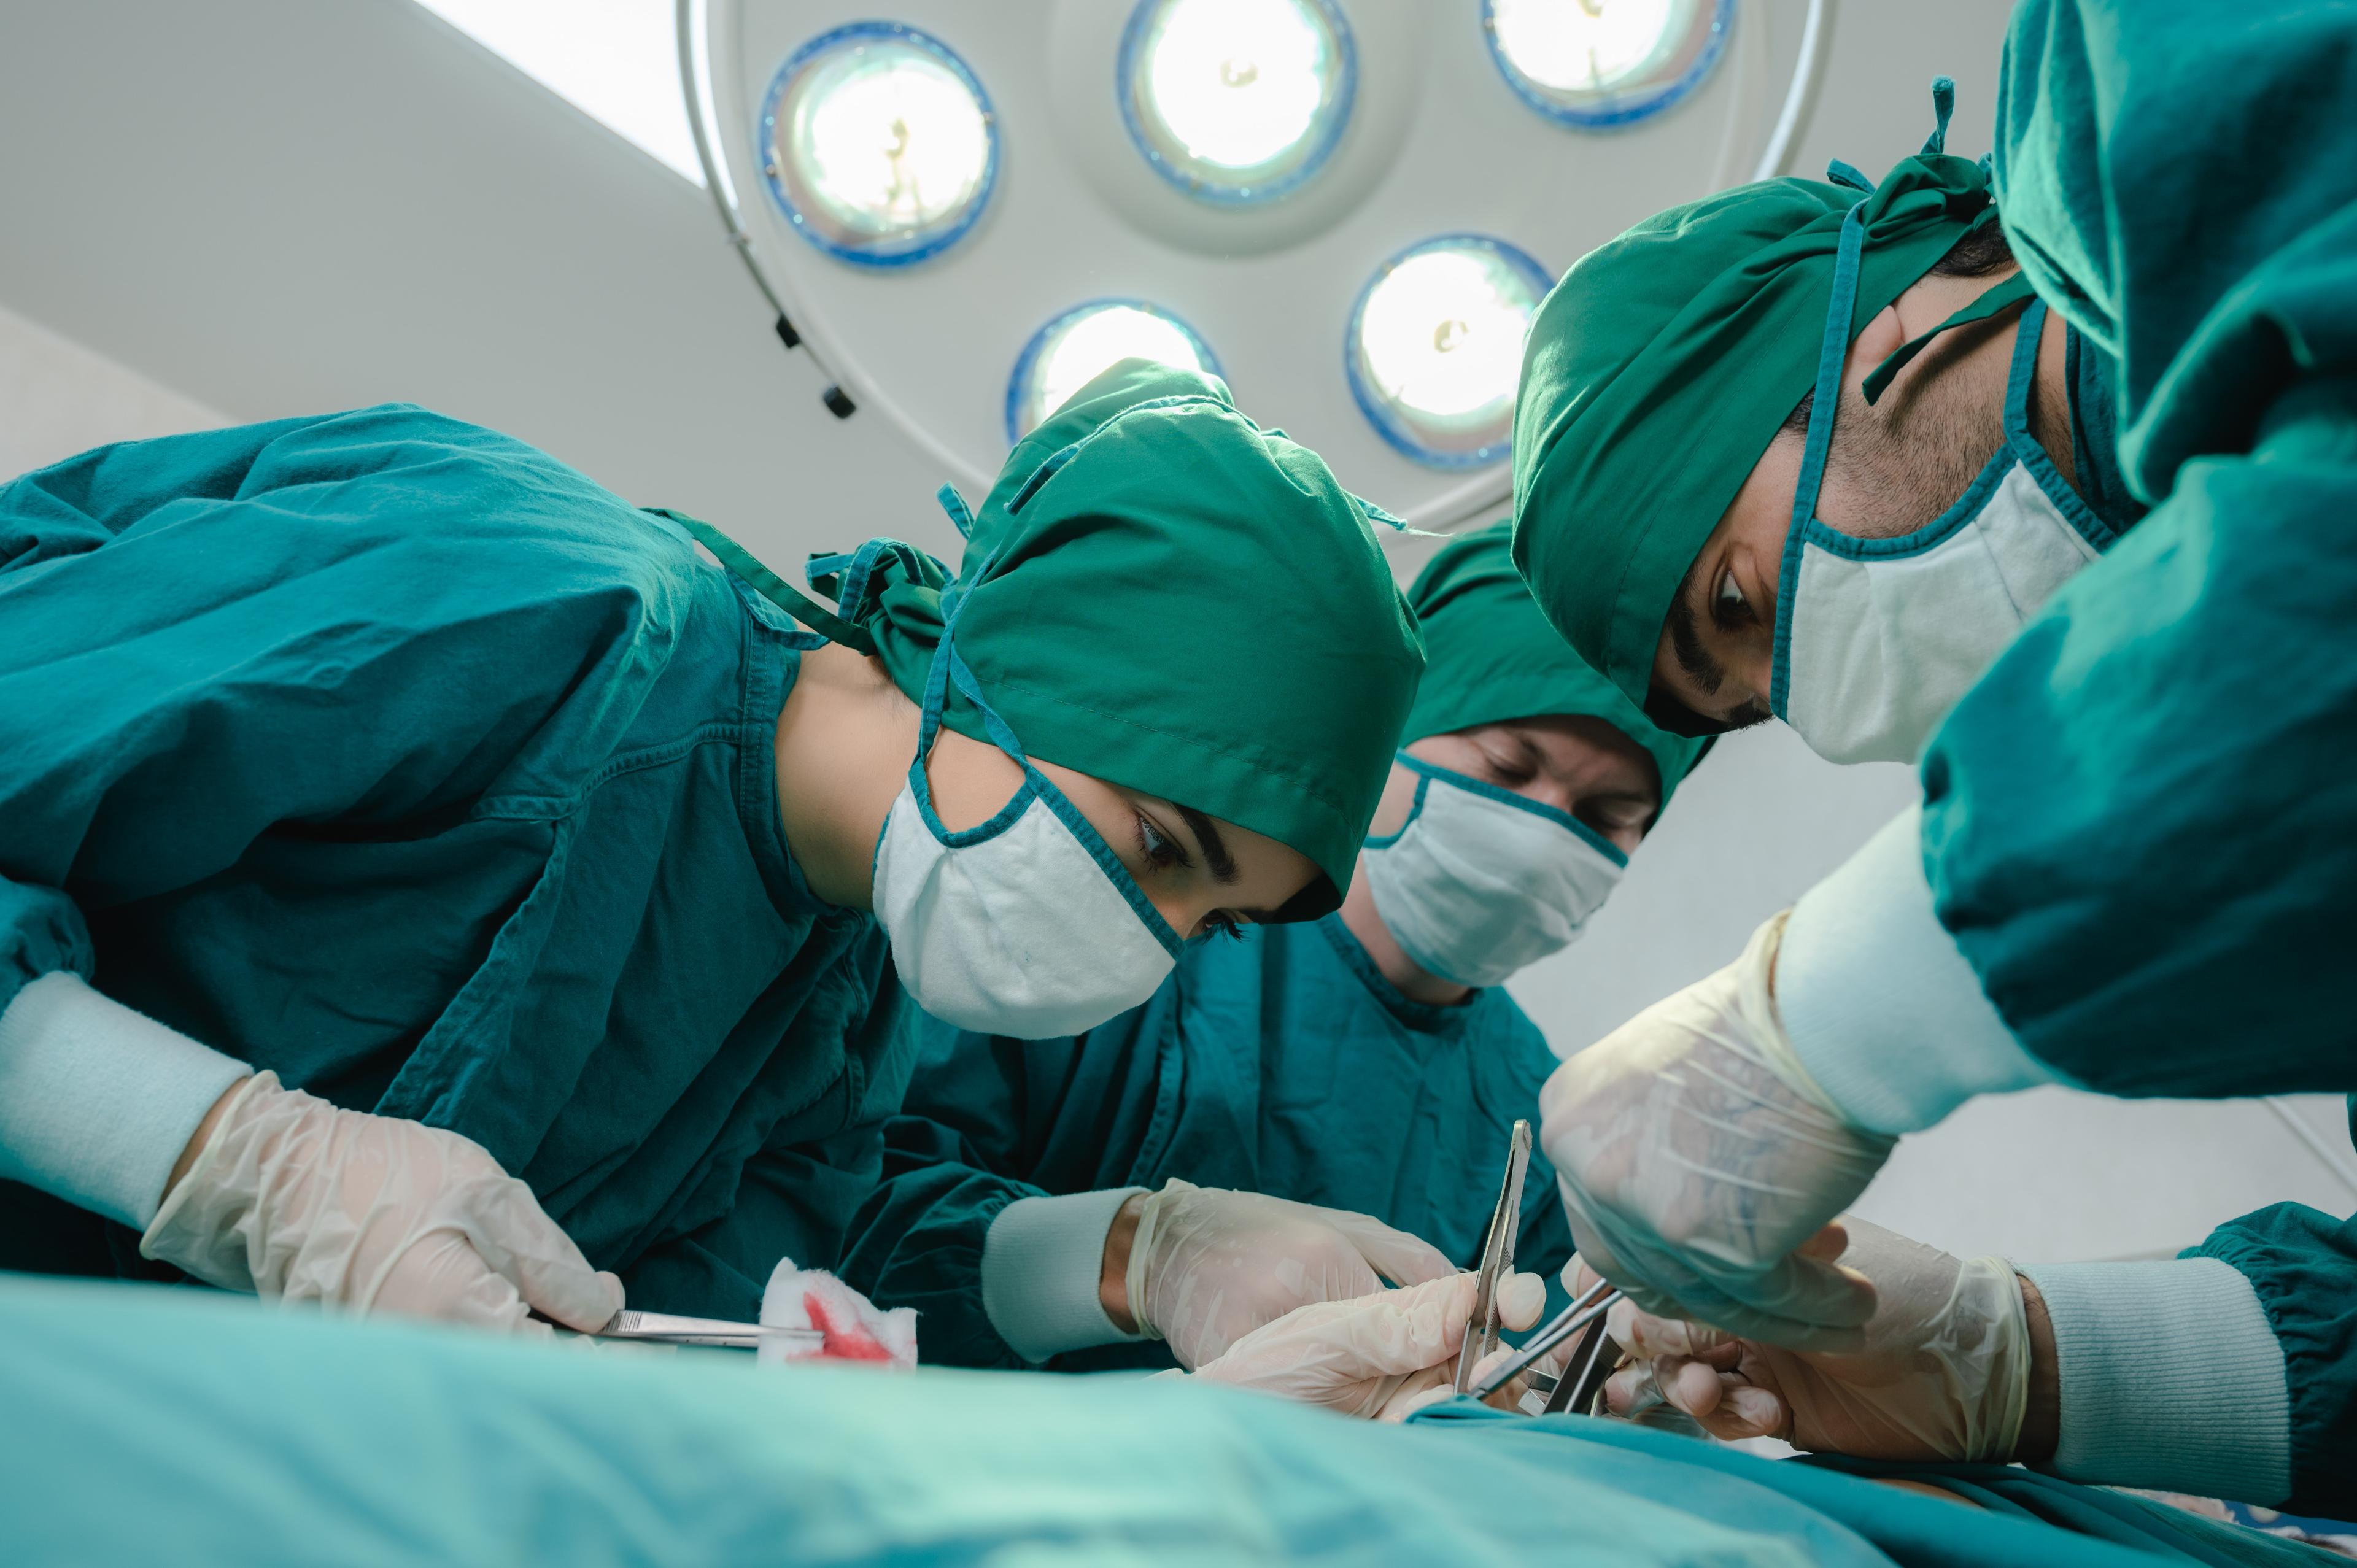 Jak wygląda operacja wymiany zastawki? - wskazania, przygotowania i przebieg zabiegu. Zabieg przezcewnikowej implantacji zastawki aortalnej. Natężenie lęku i depresji u pacjentów poddawanych zabiegowi wymiany zastawki aortalnej